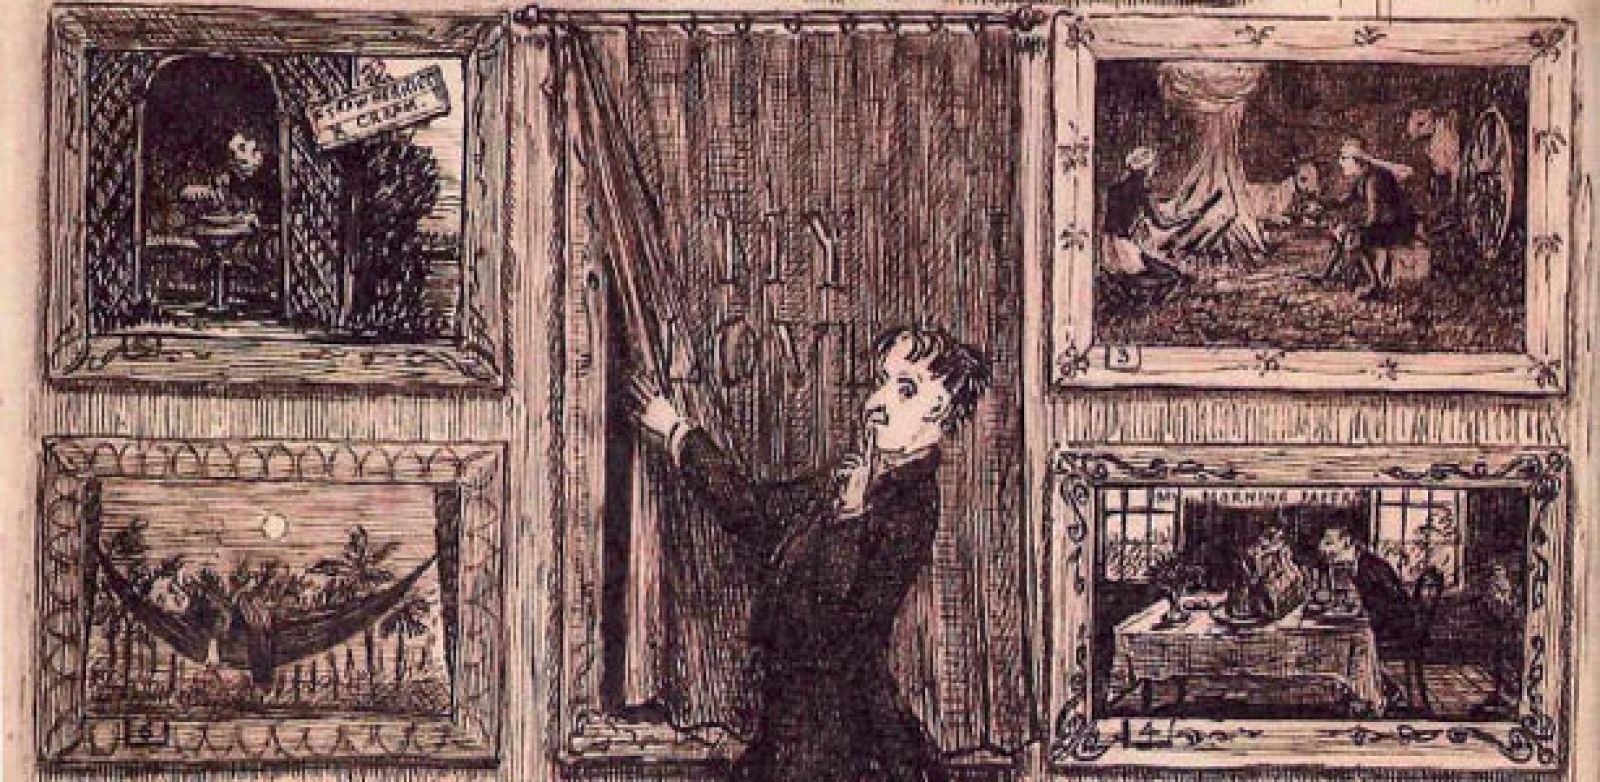 Fragmento de una ilustración original de 'Nueve preguntas' (1876)